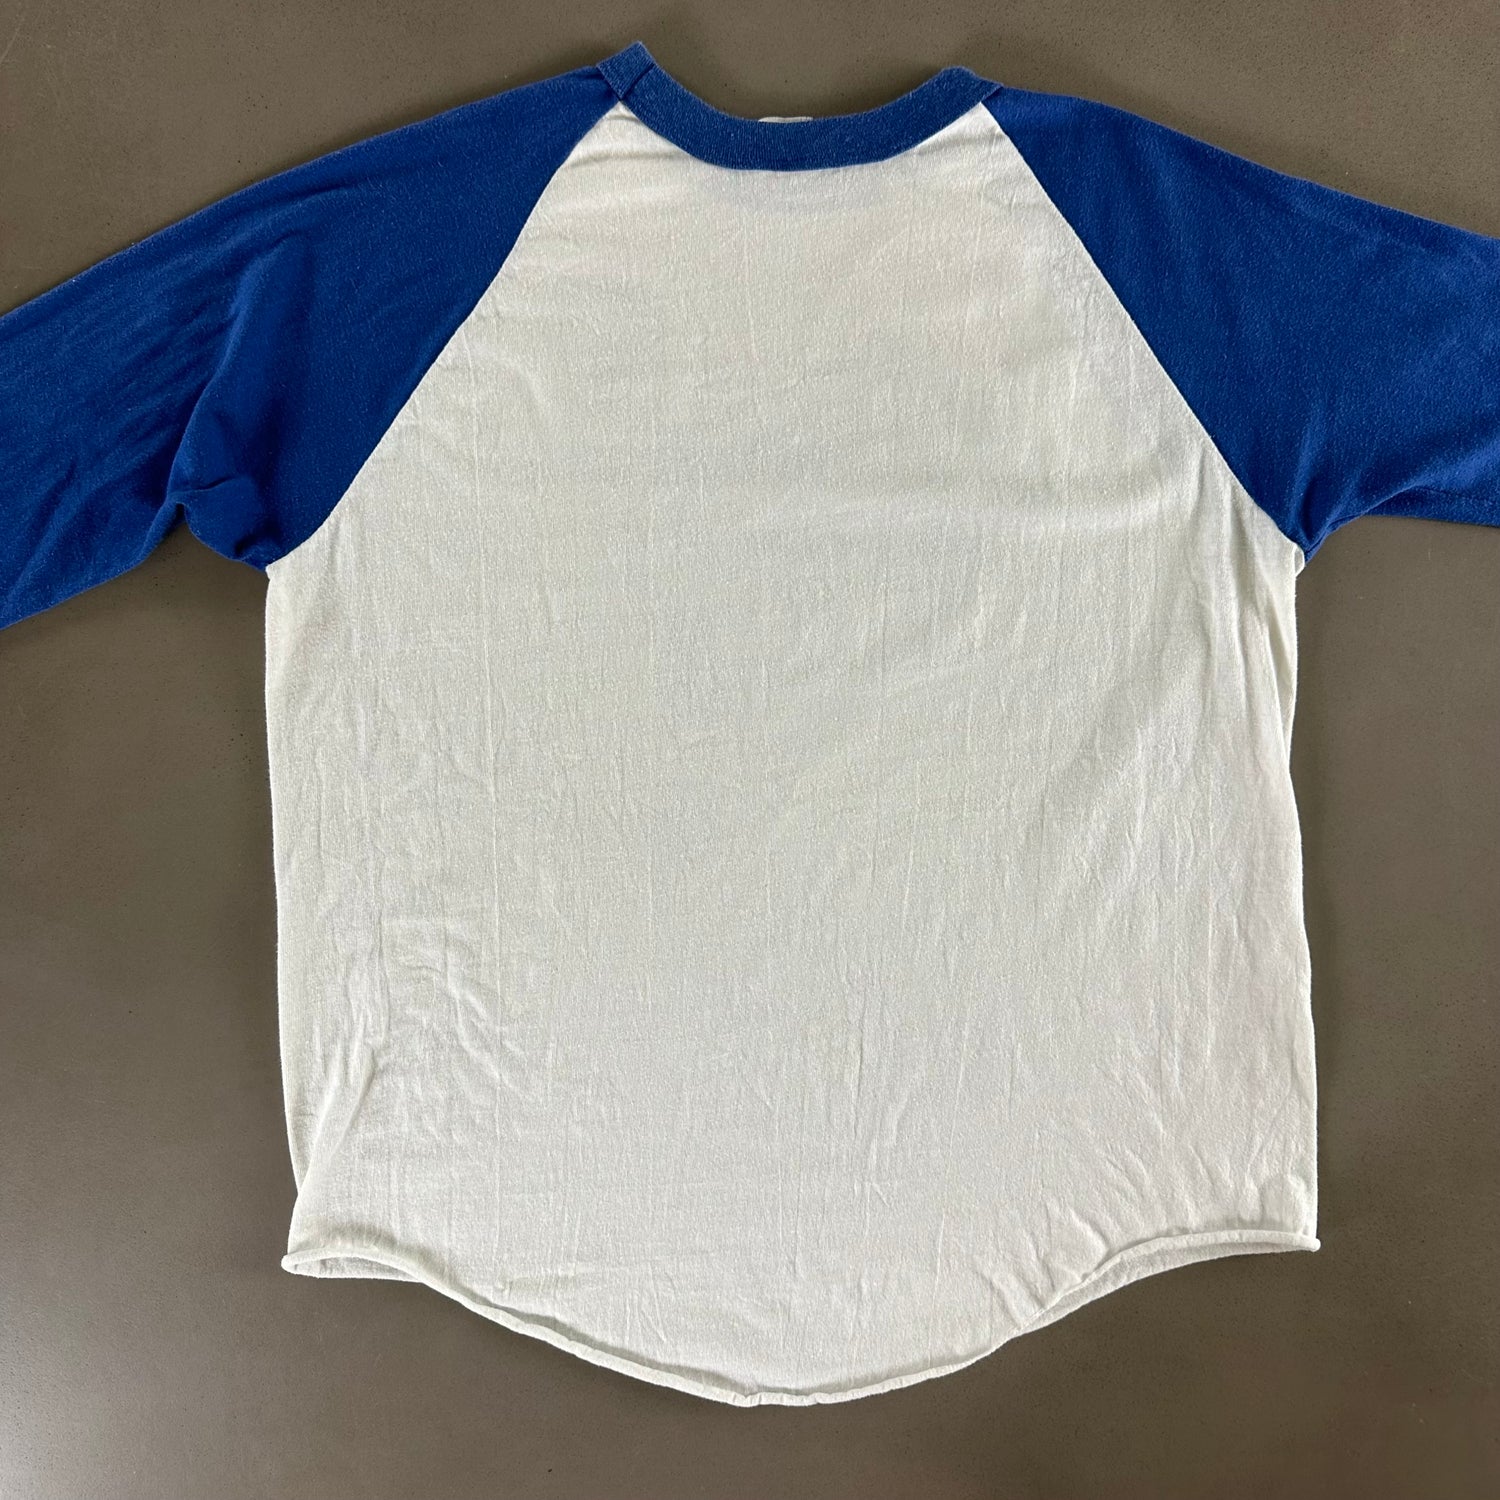 Vintage 1987 Park City T-shirt size Large